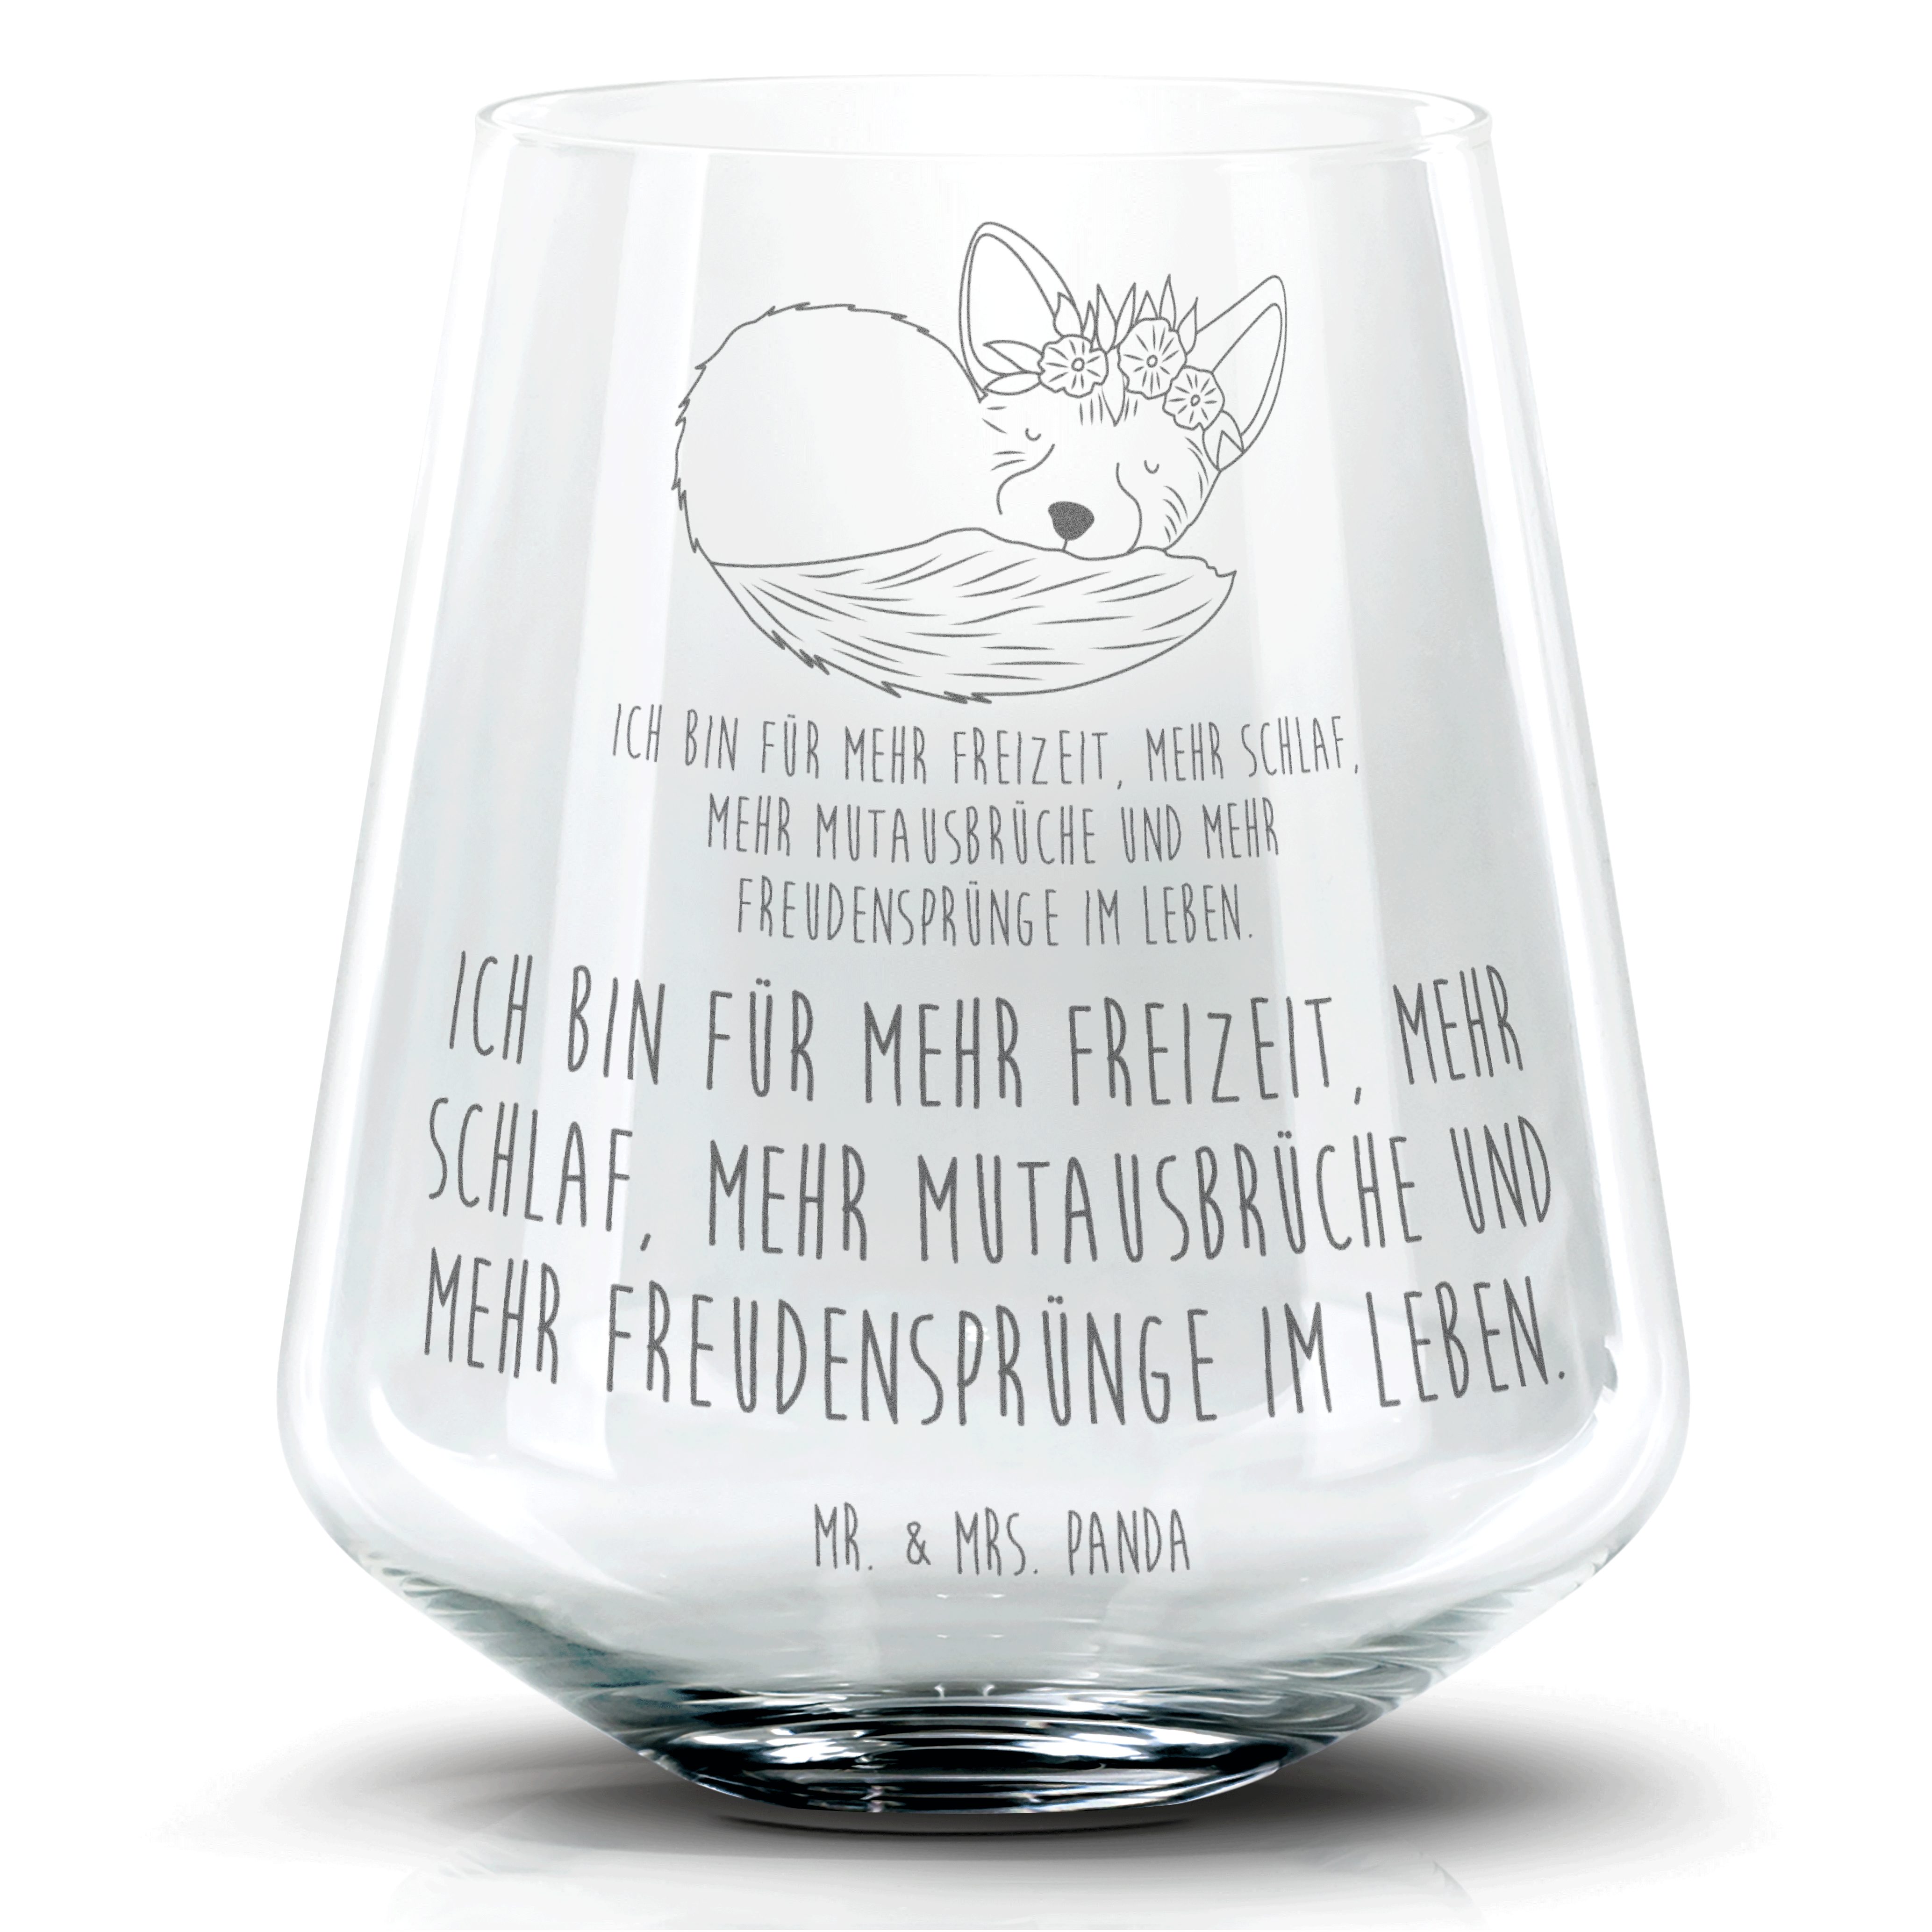 Mr. & Mrs. Panda Cocktailglas Wüstenfuchs Blumen - Transparent - Geschenk, Cocktail Glas mit Wunsch, Premium Glas, Personalisierbar